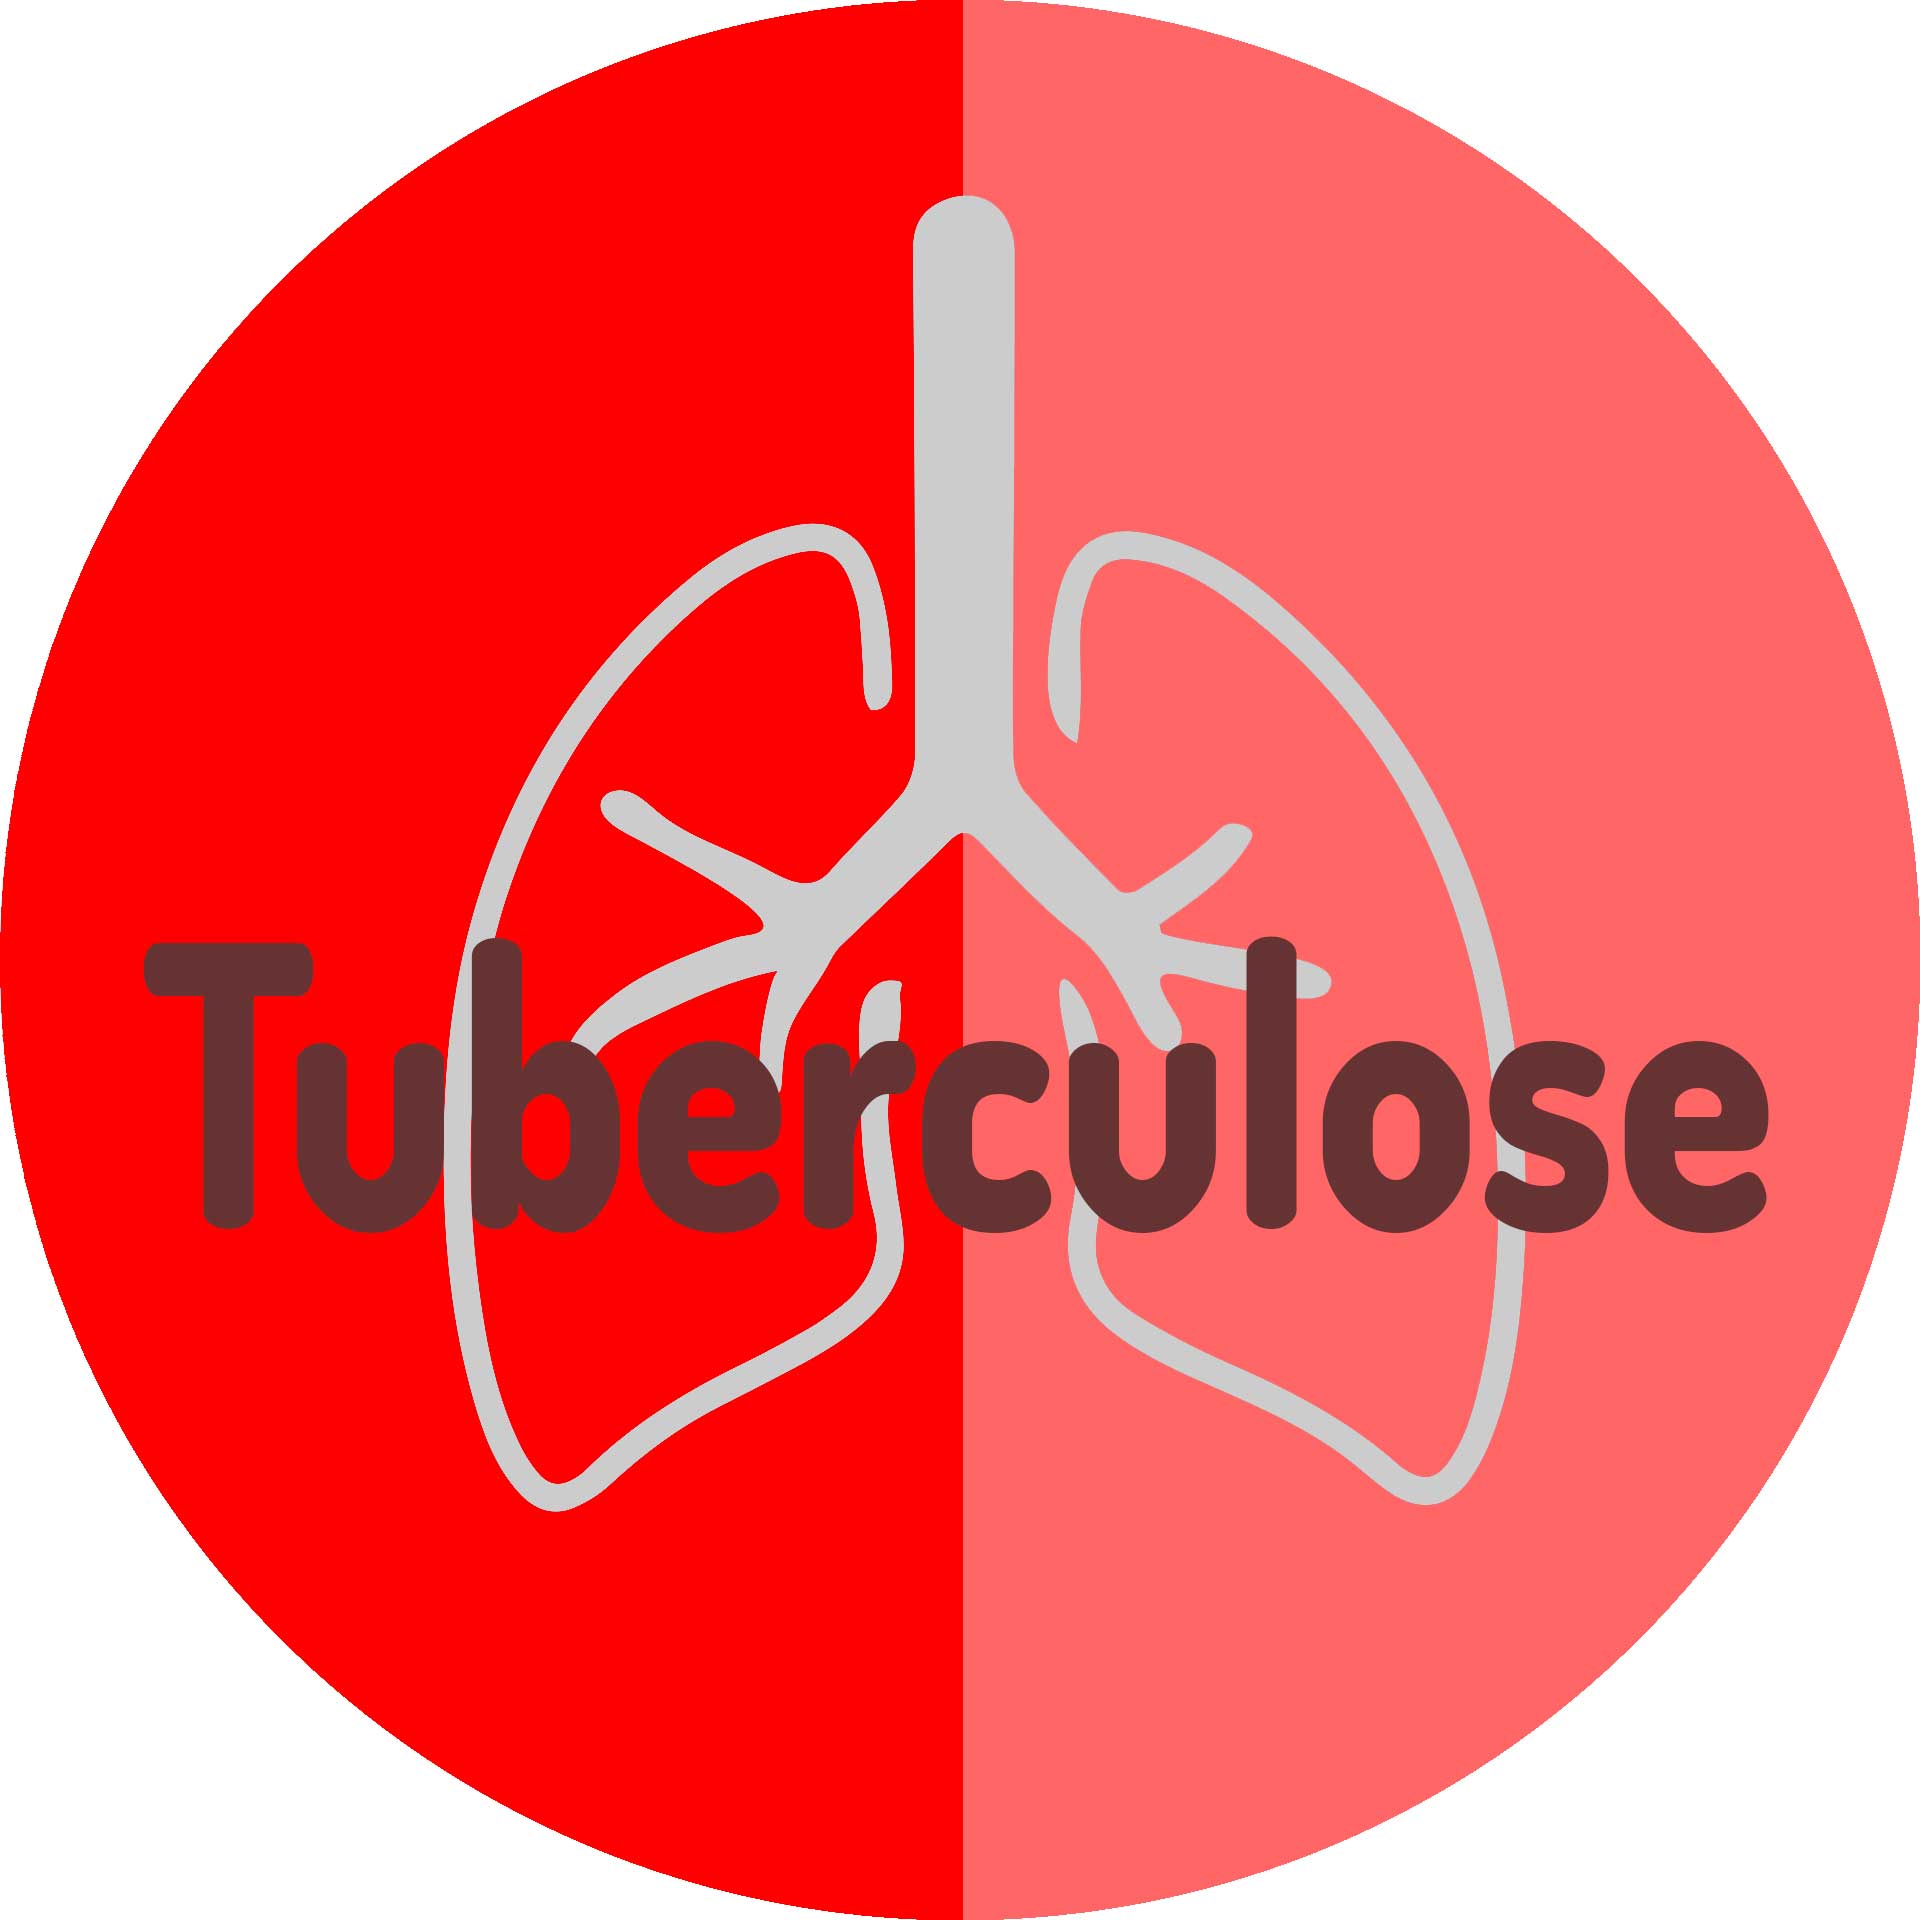 Tuberculose: doença ainda faz vítimas, apesar de tratamento completo garantir a cura